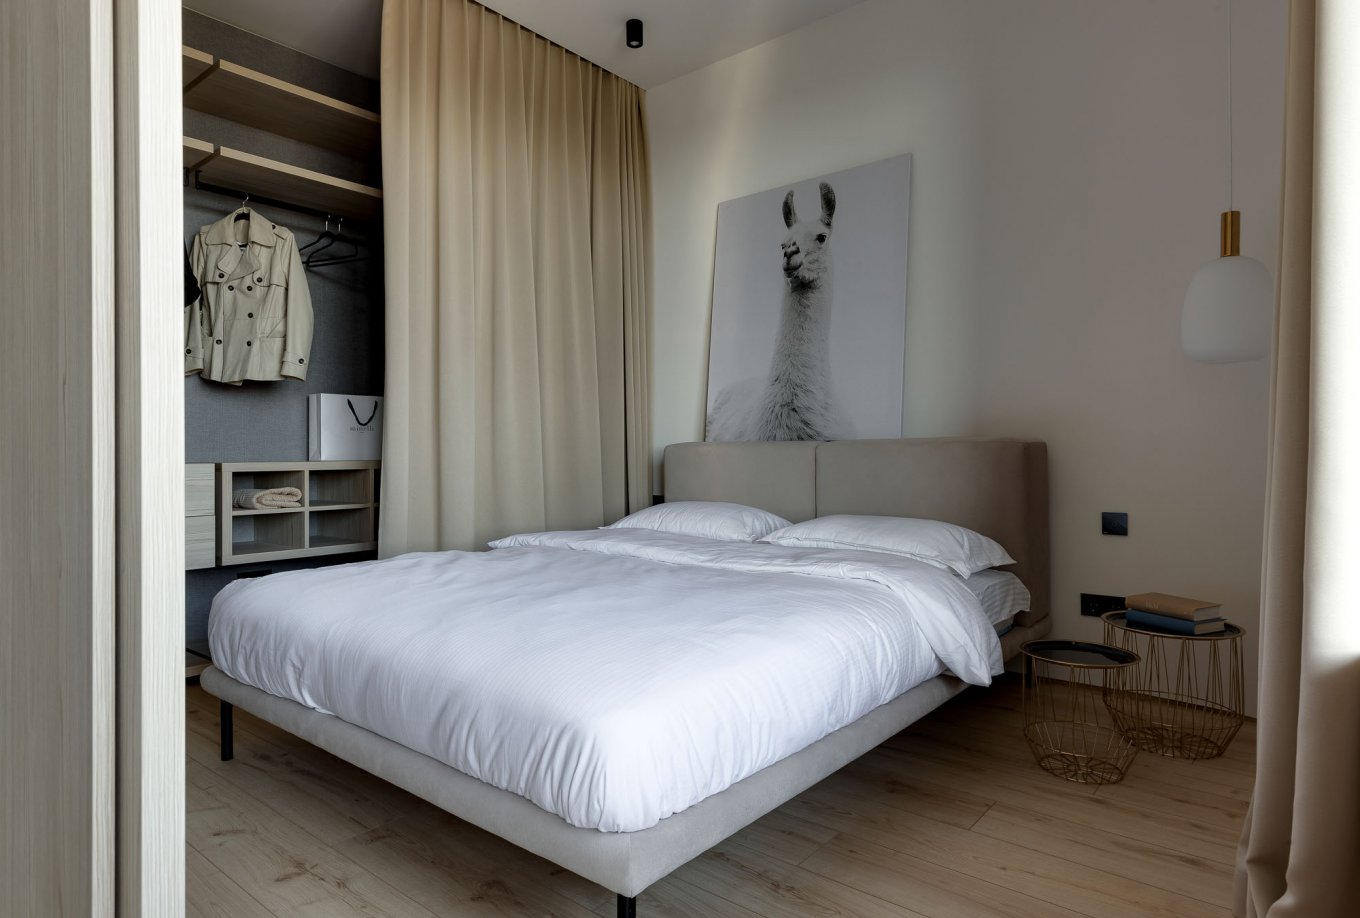 Laminatboden Hotel California LA144SYSV4 im Schlafzimmer mit Bett moderne Einrichtung helle Holzoptik